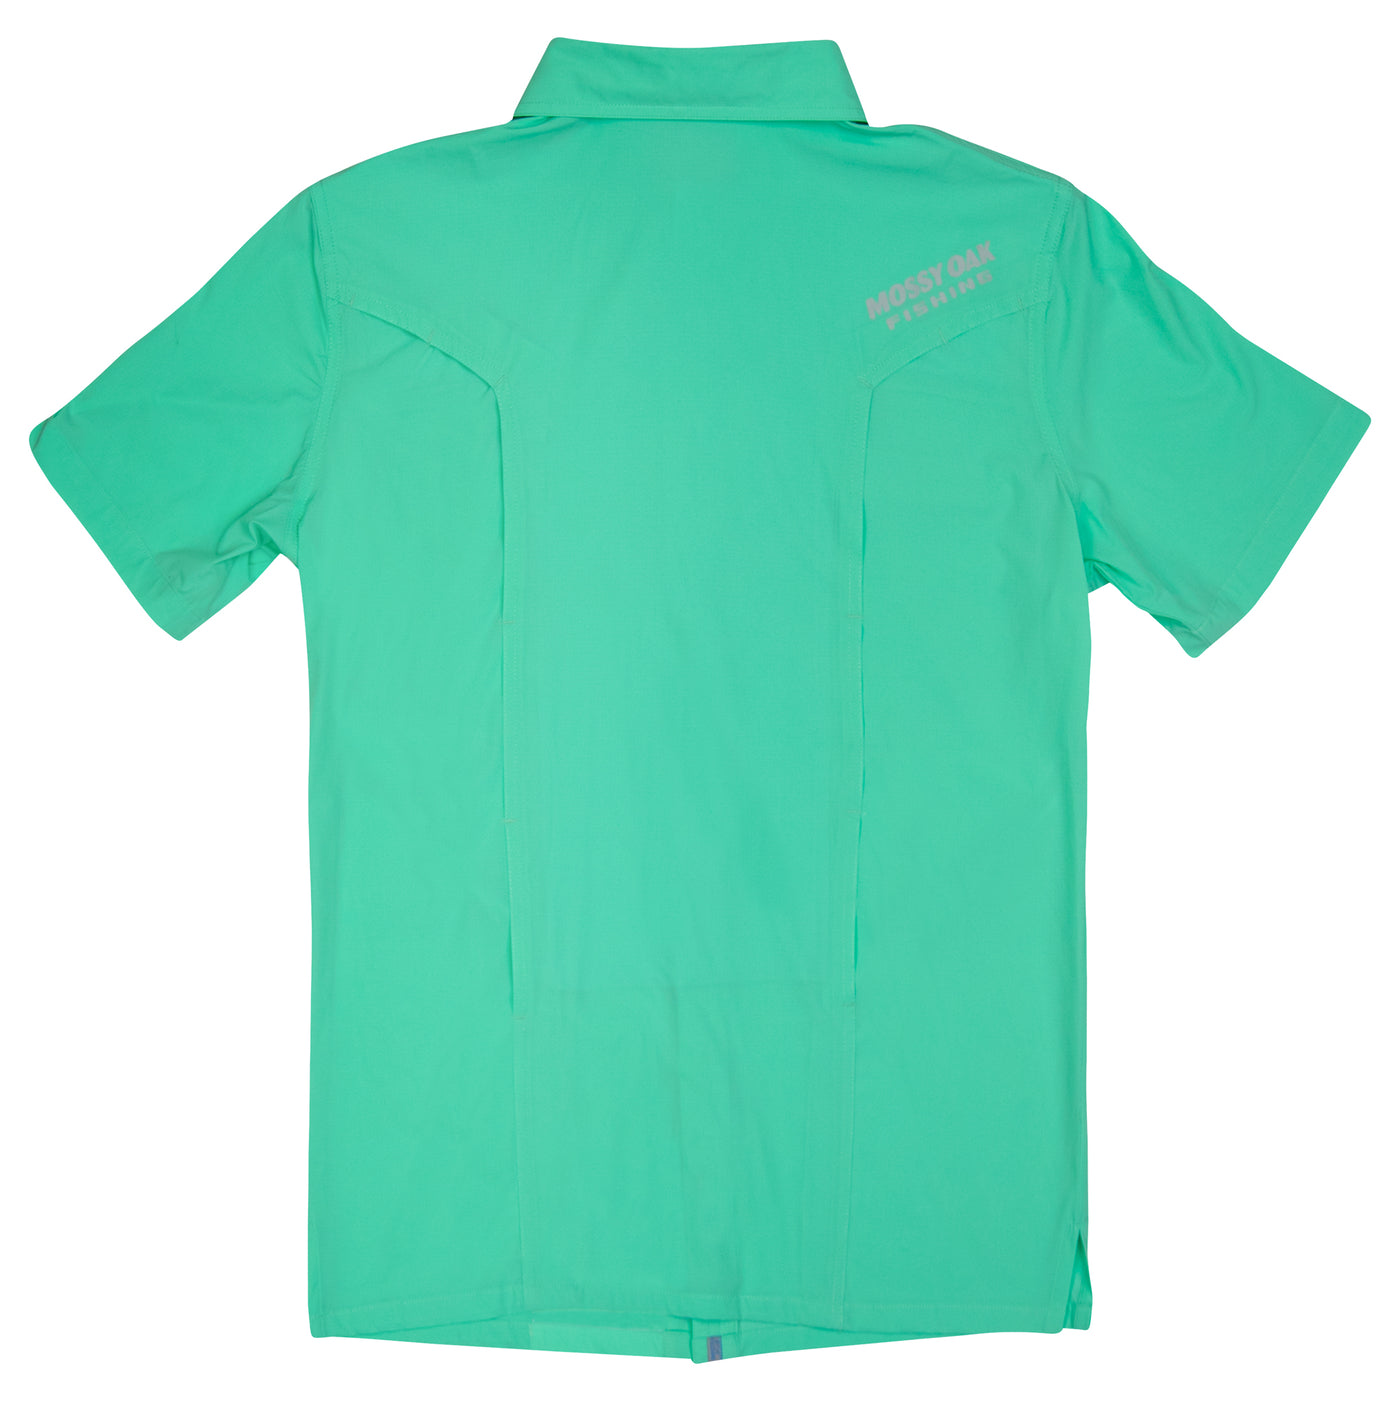 Mossy Oak Fishing shirt XL, Lime Green